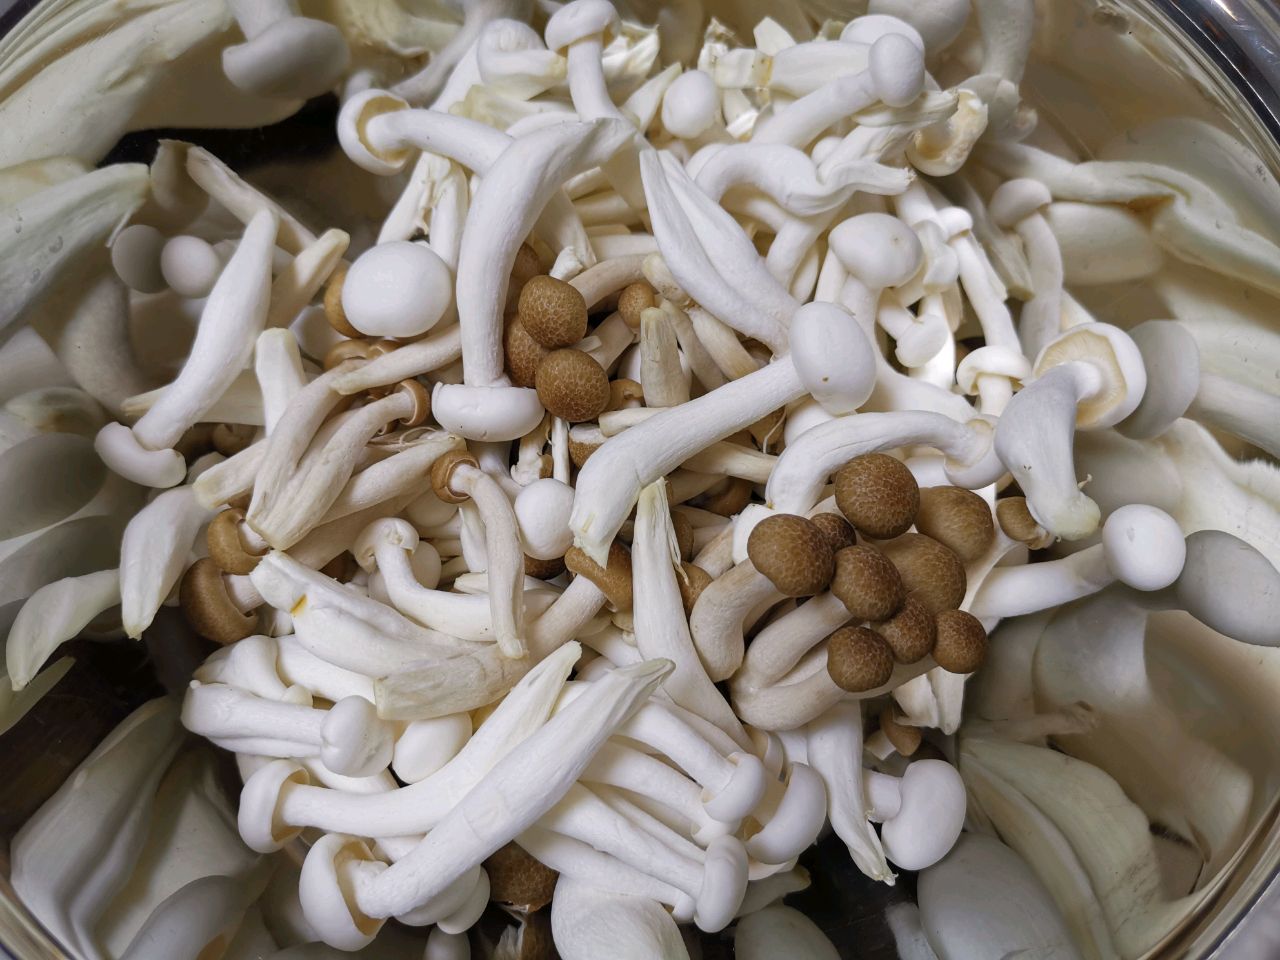 青菜炒蘑菇,青菜炒蘑菇的家常做法 - 美食杰青菜炒蘑菇做法大全